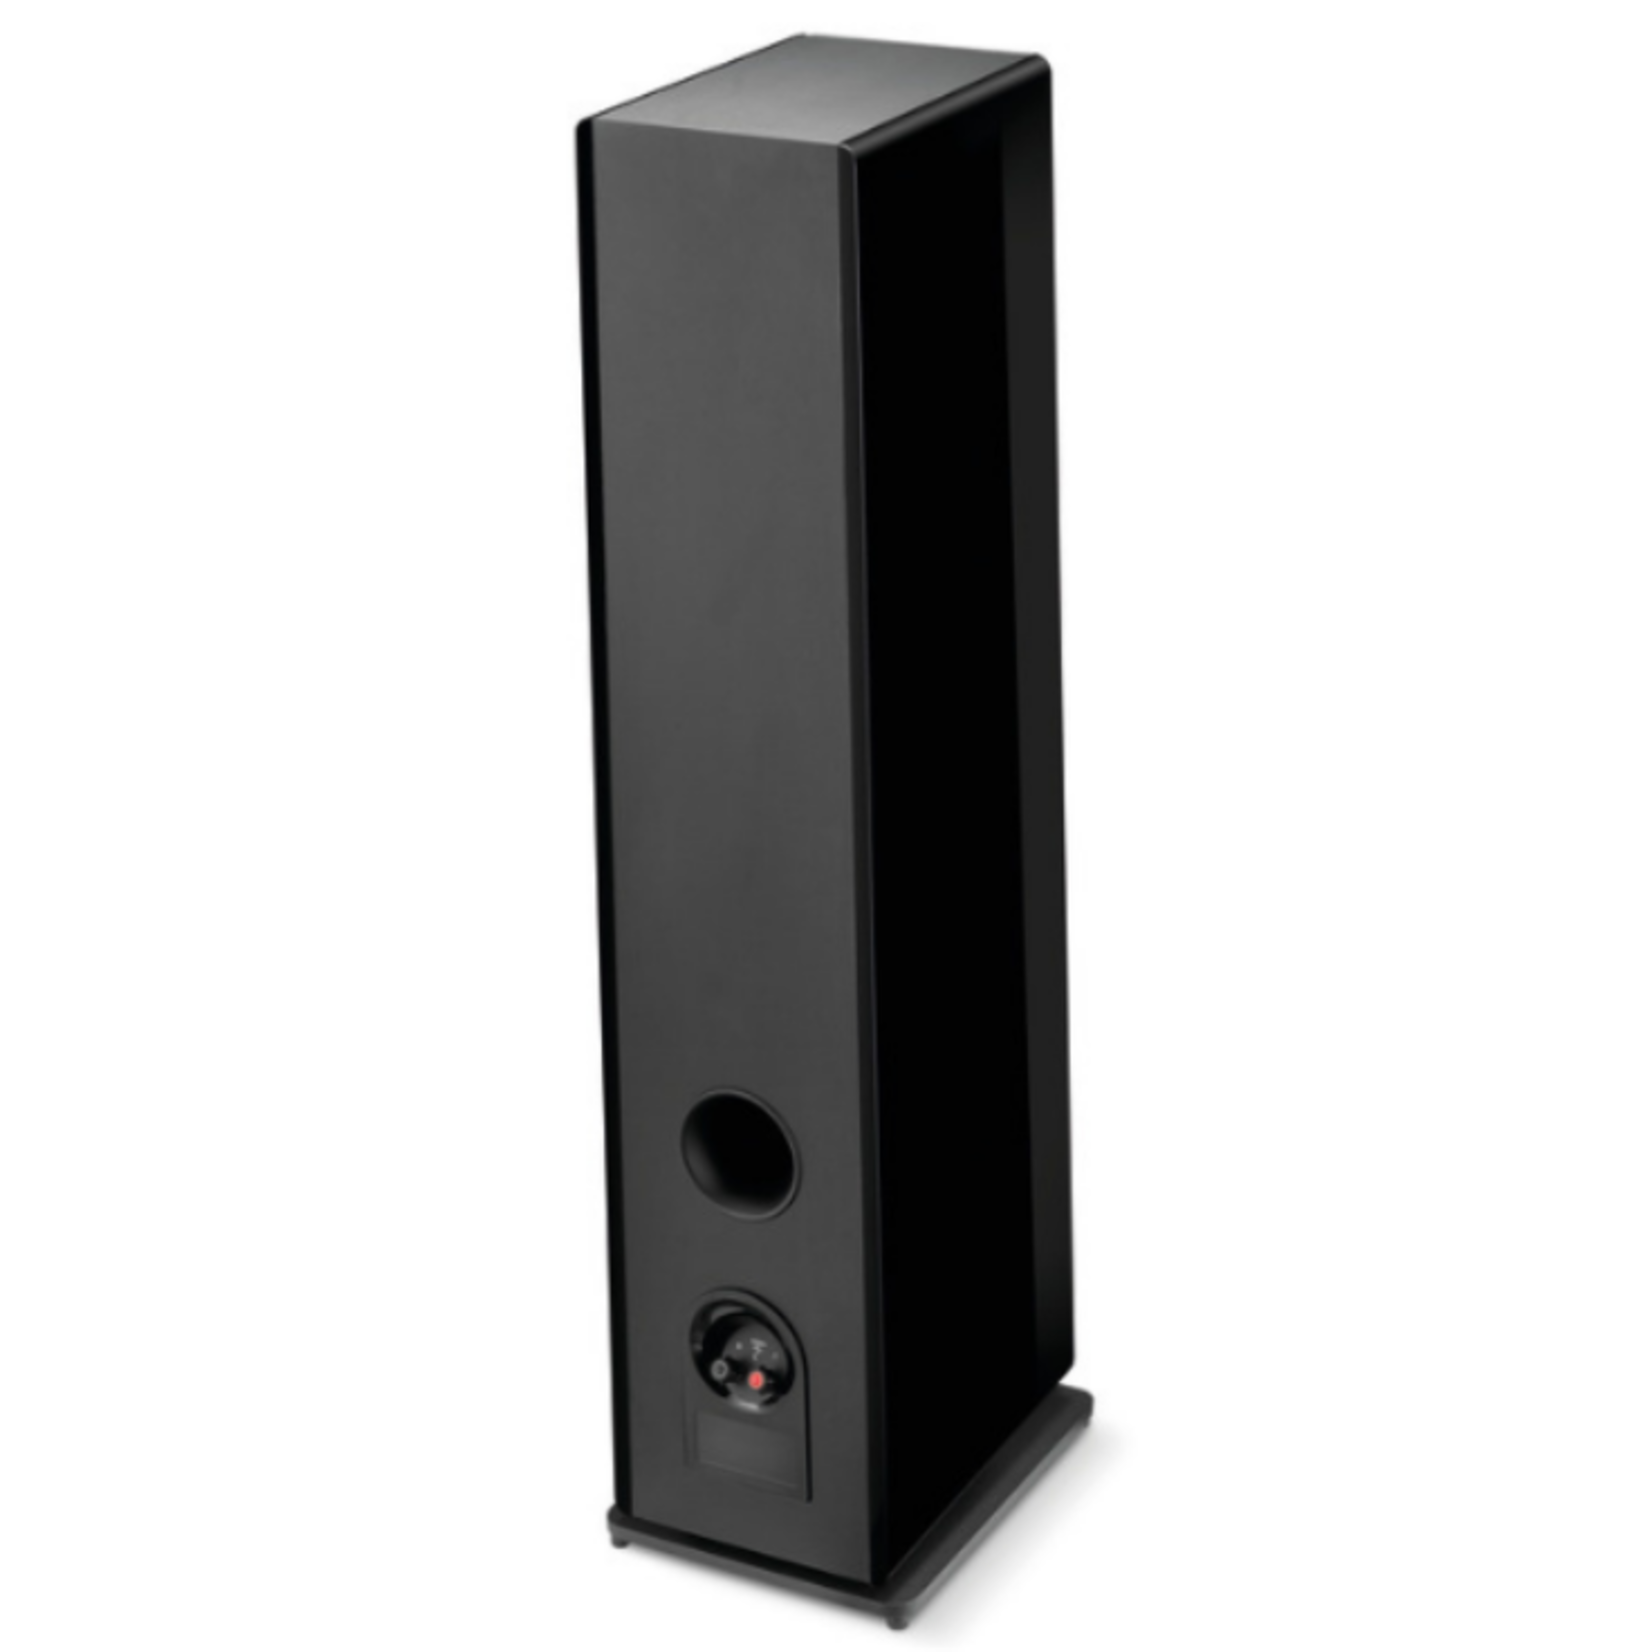 Focal Focal Vestia N3 Floorstanding Speaker (pair) (black)